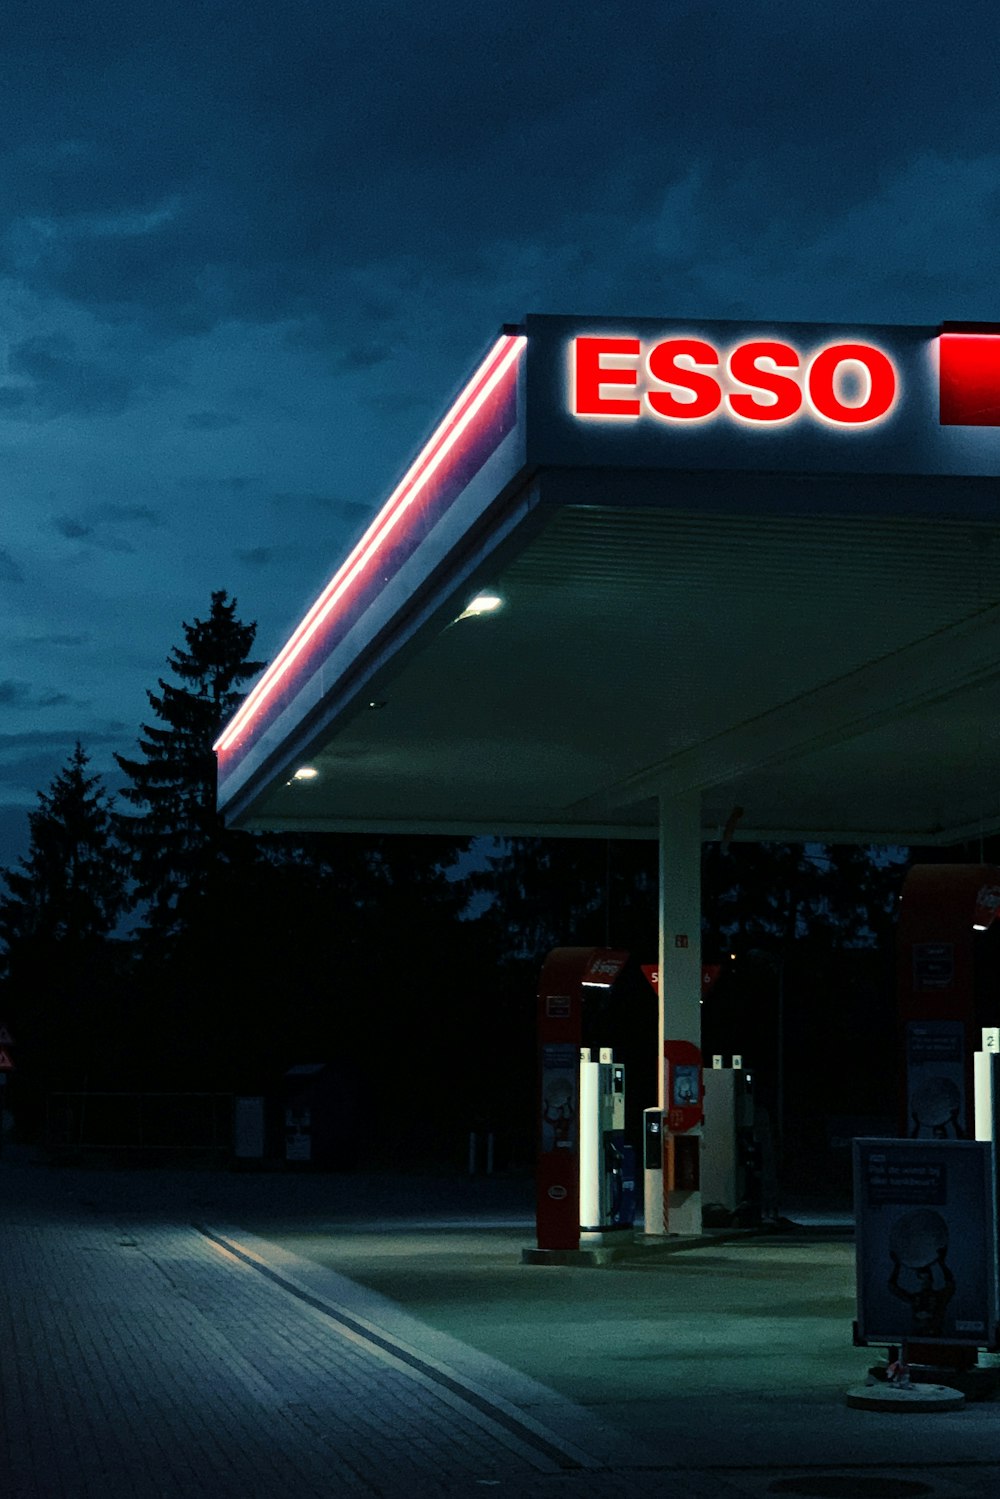 Esso-Tankstelle bei Nacht